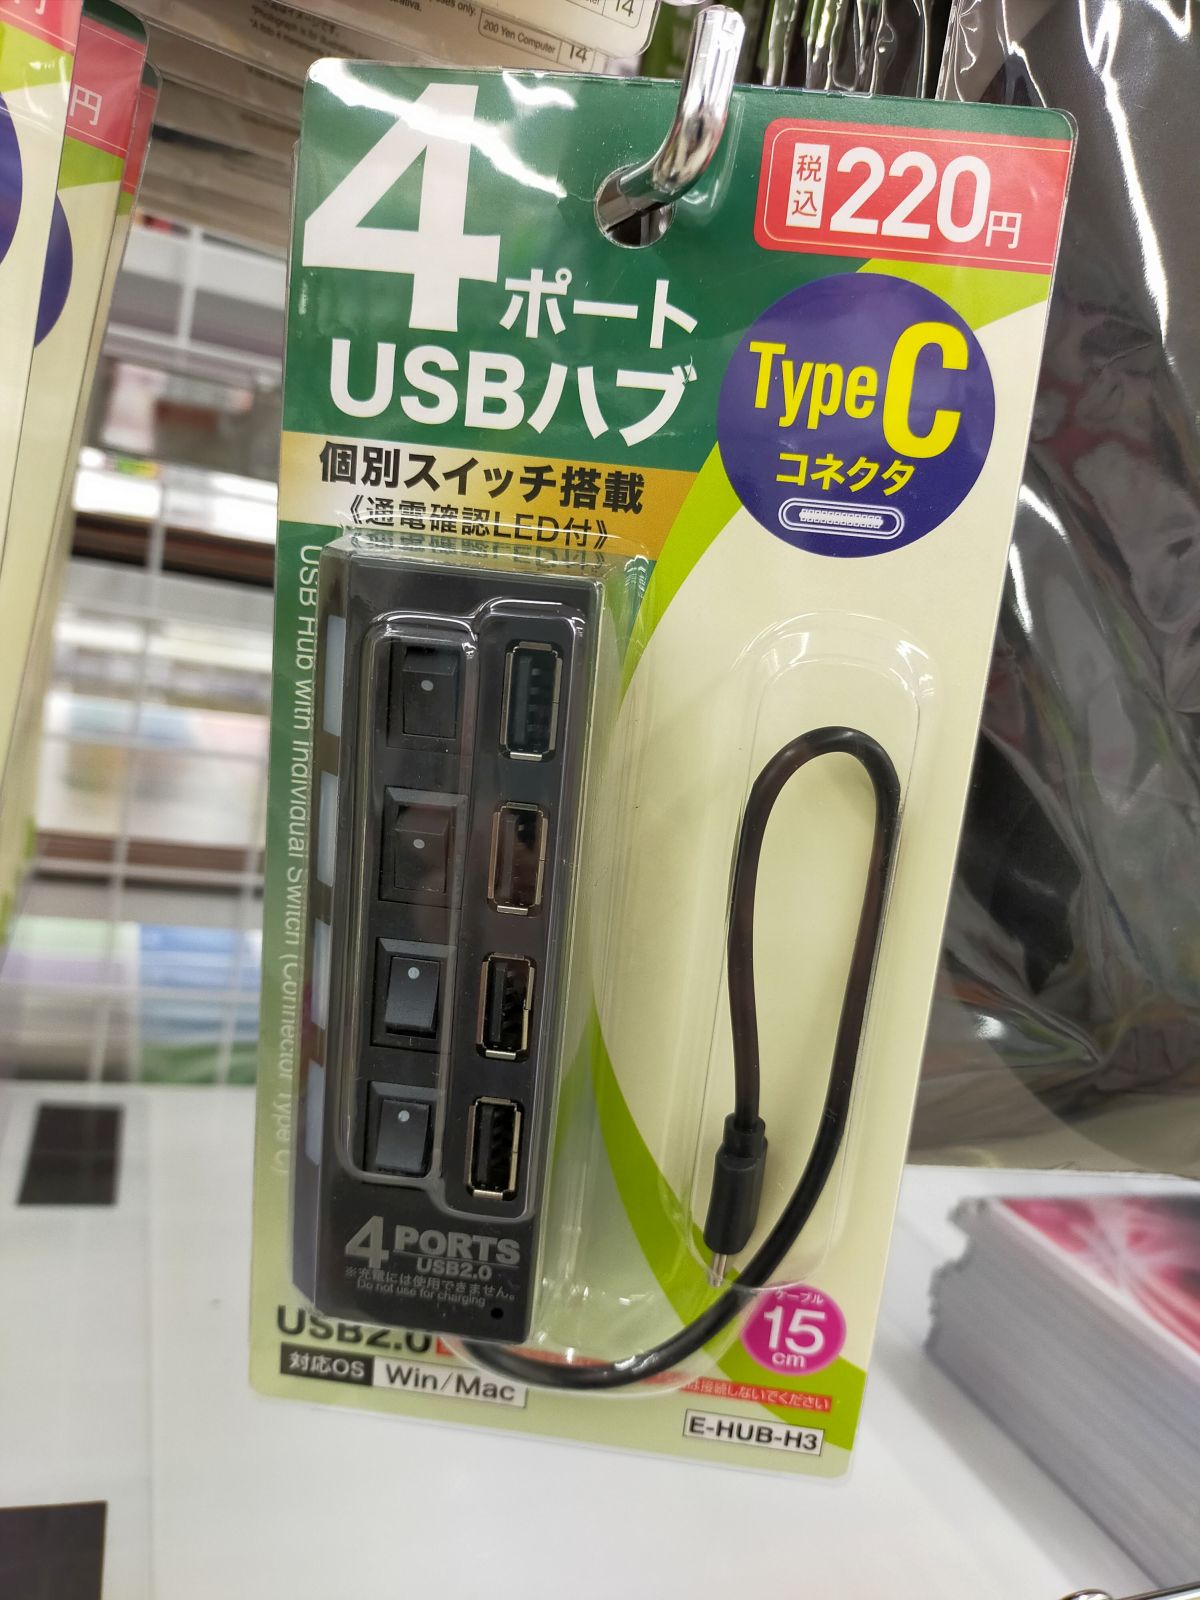 USBハブのお値段